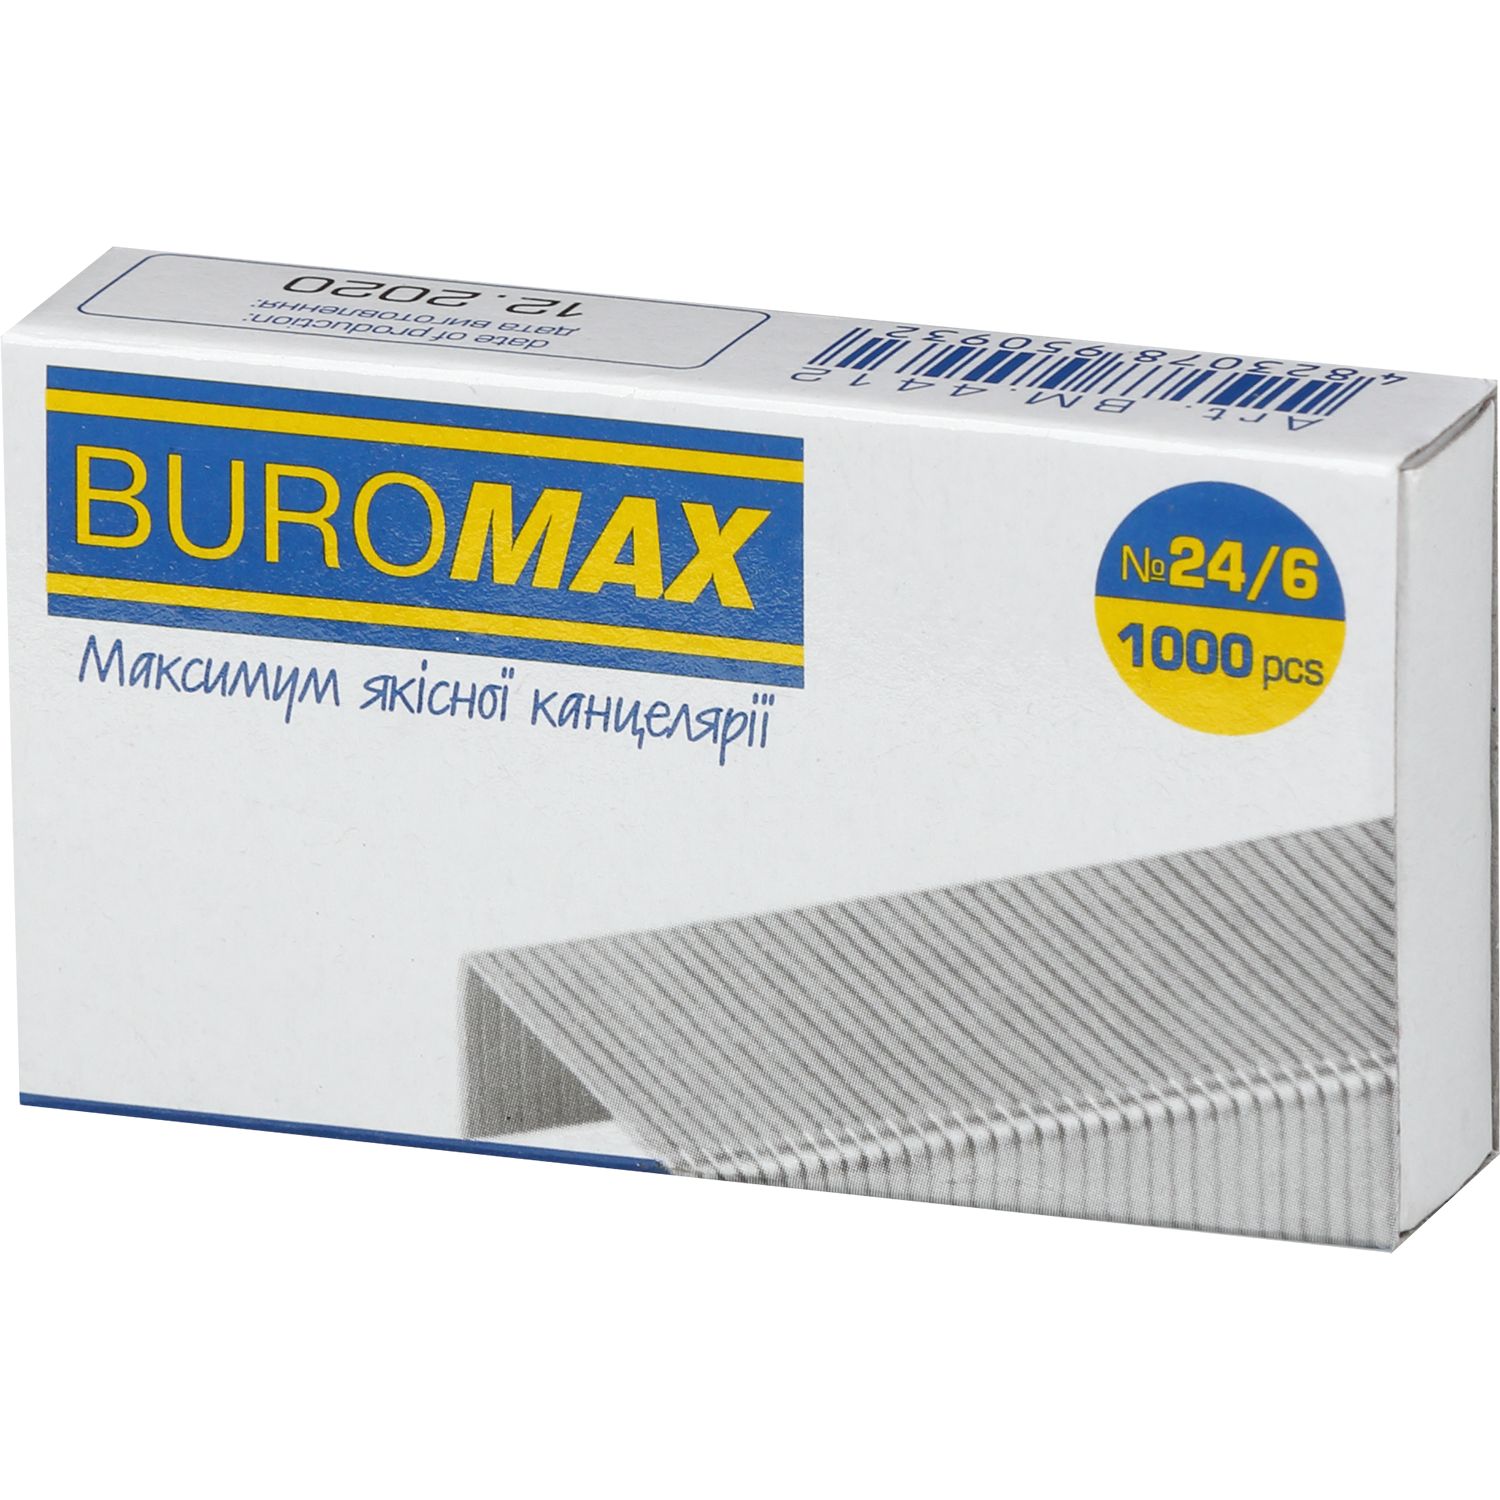 Скобы для степлеров Buromax Люкс №24/6 1000 шт. (BM.4412) - фото 1